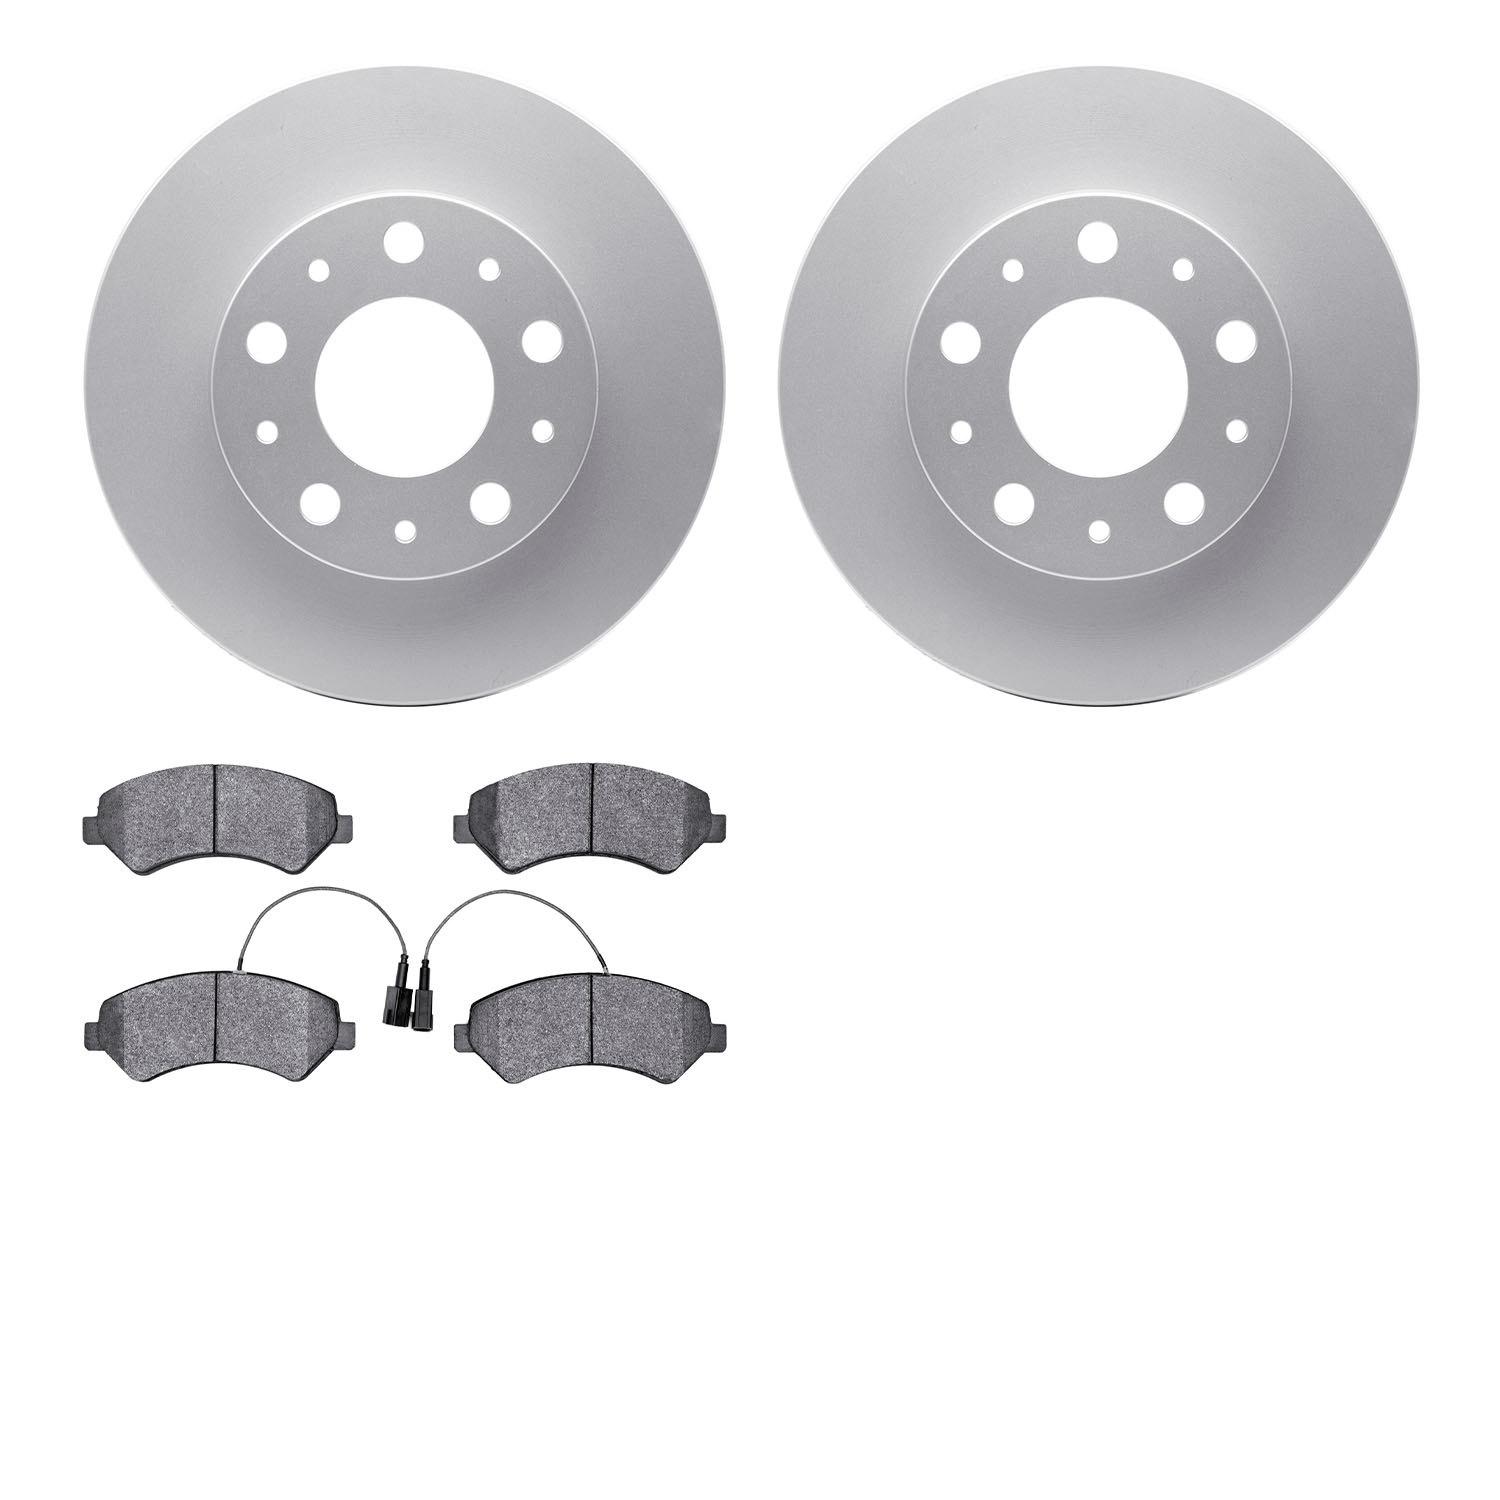 4202-40152 Geospec Brake Rotors w/Heavy-Duty Brake Pads Kit, Fits Select Mopar, Position: Front